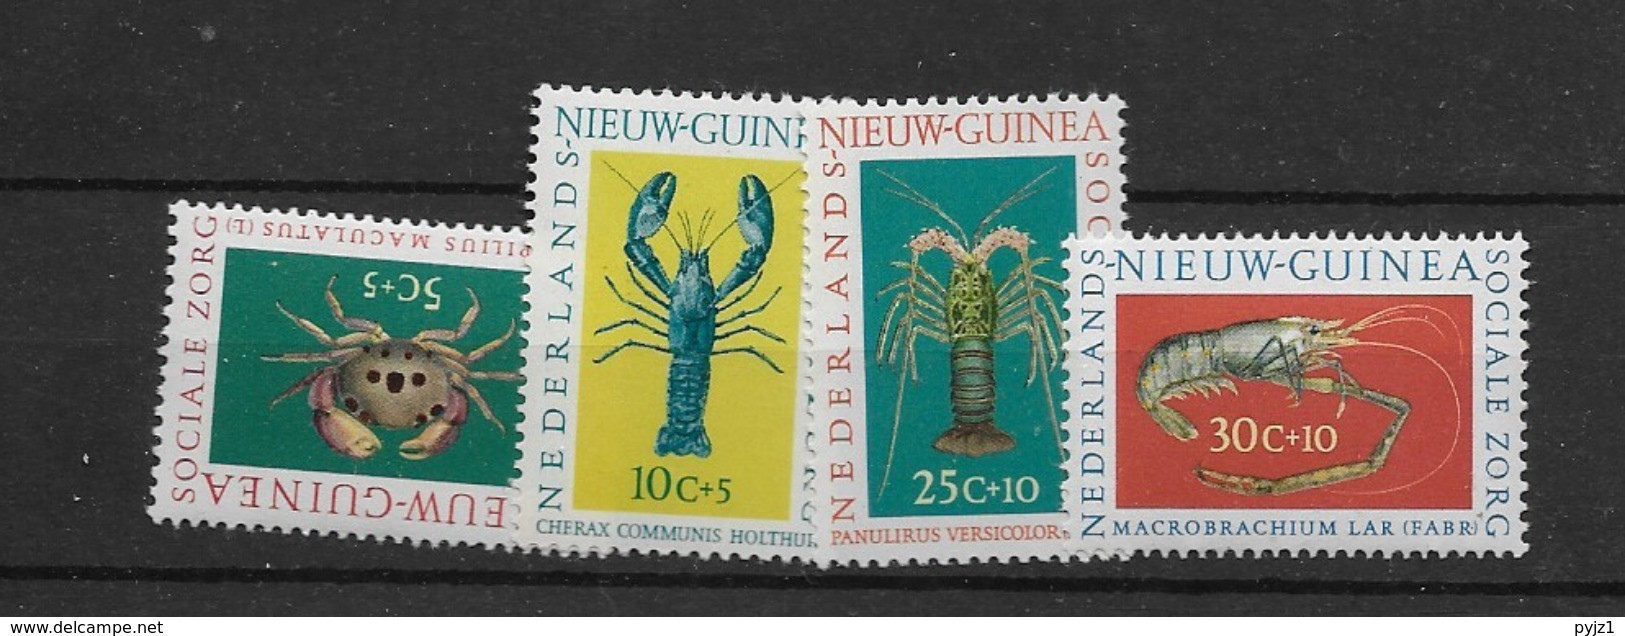 1962 Nederlands Nieuw Guinea, Postfris** - Crustacés